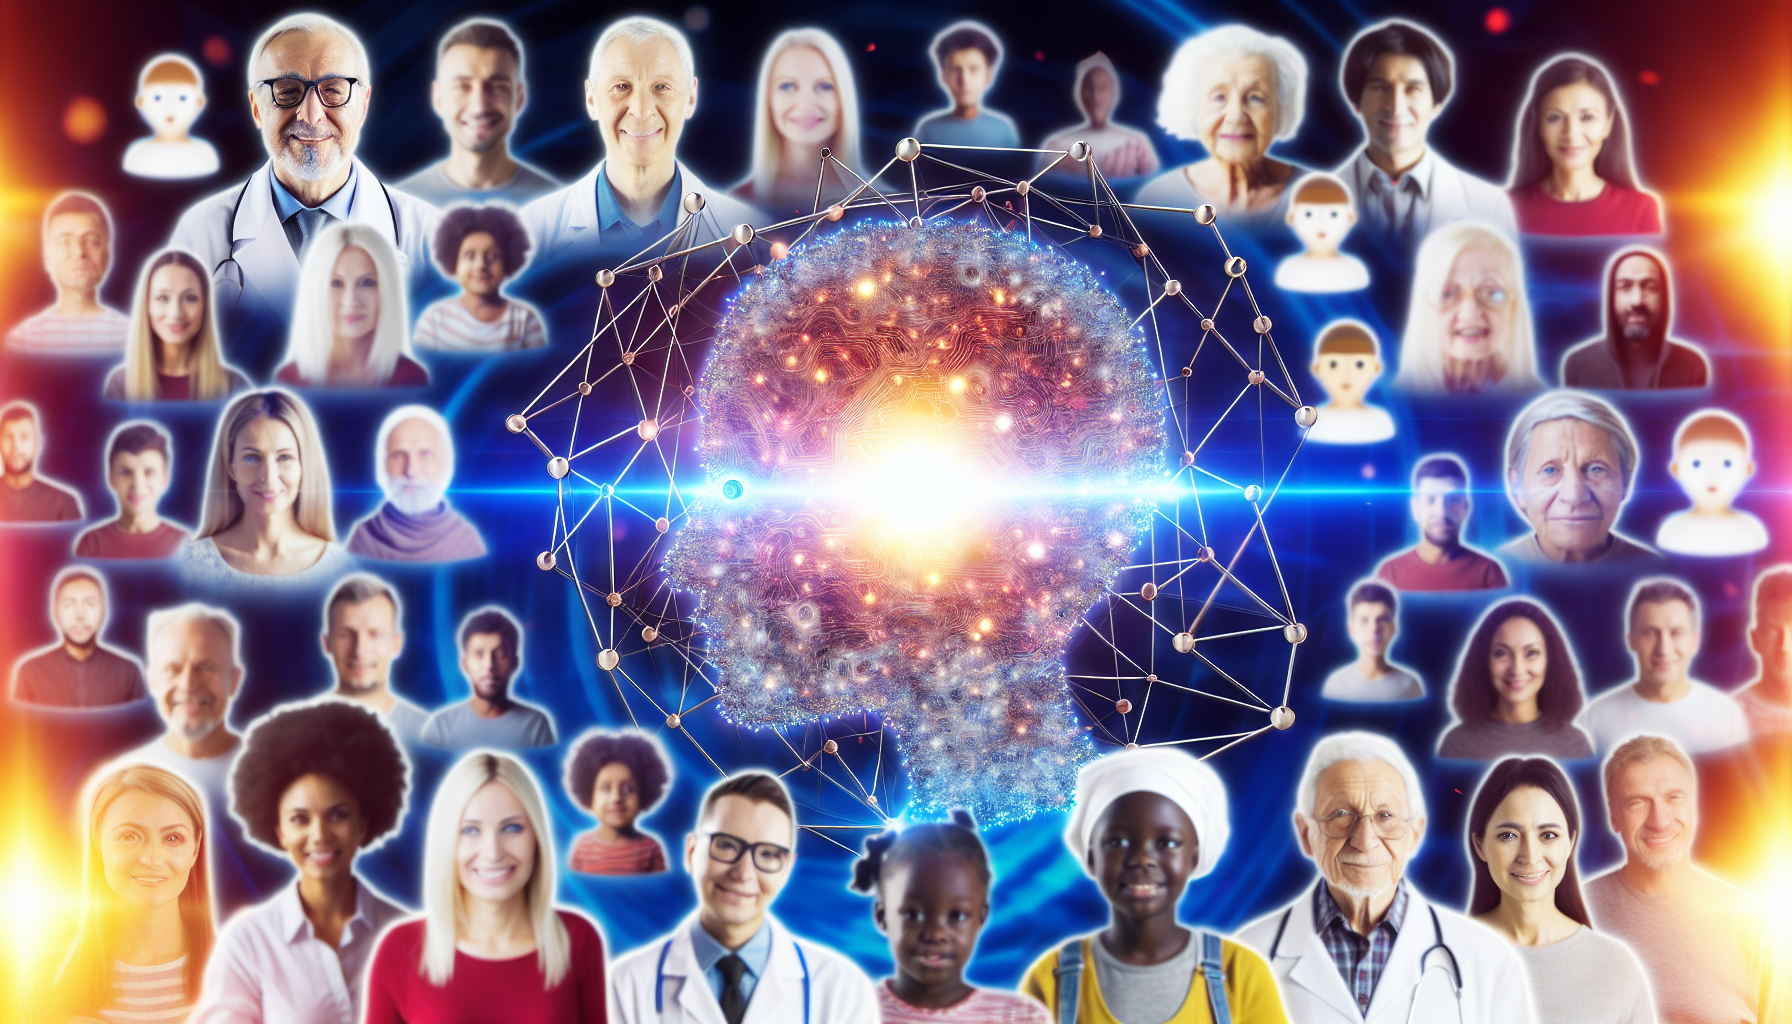 Maschinen als Meinungsführer: Künstliche Intelligenz im Zentrum der Macht